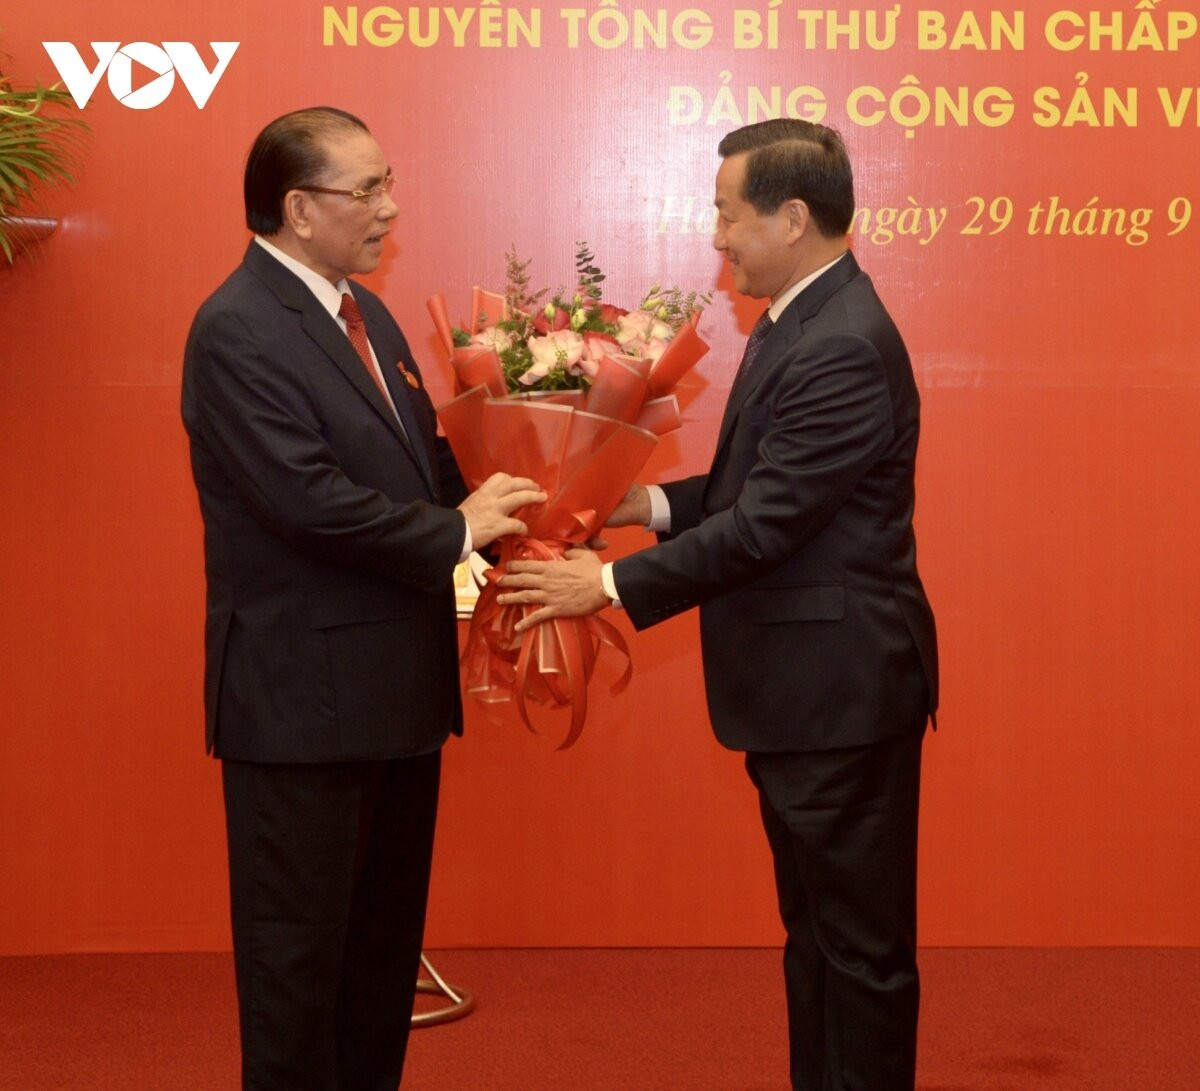 Phó Thủ tướng Lê Minh Khái tặng hoa chúc mừng nguyên Tổng Bí thư Nông Đức Mạnh.